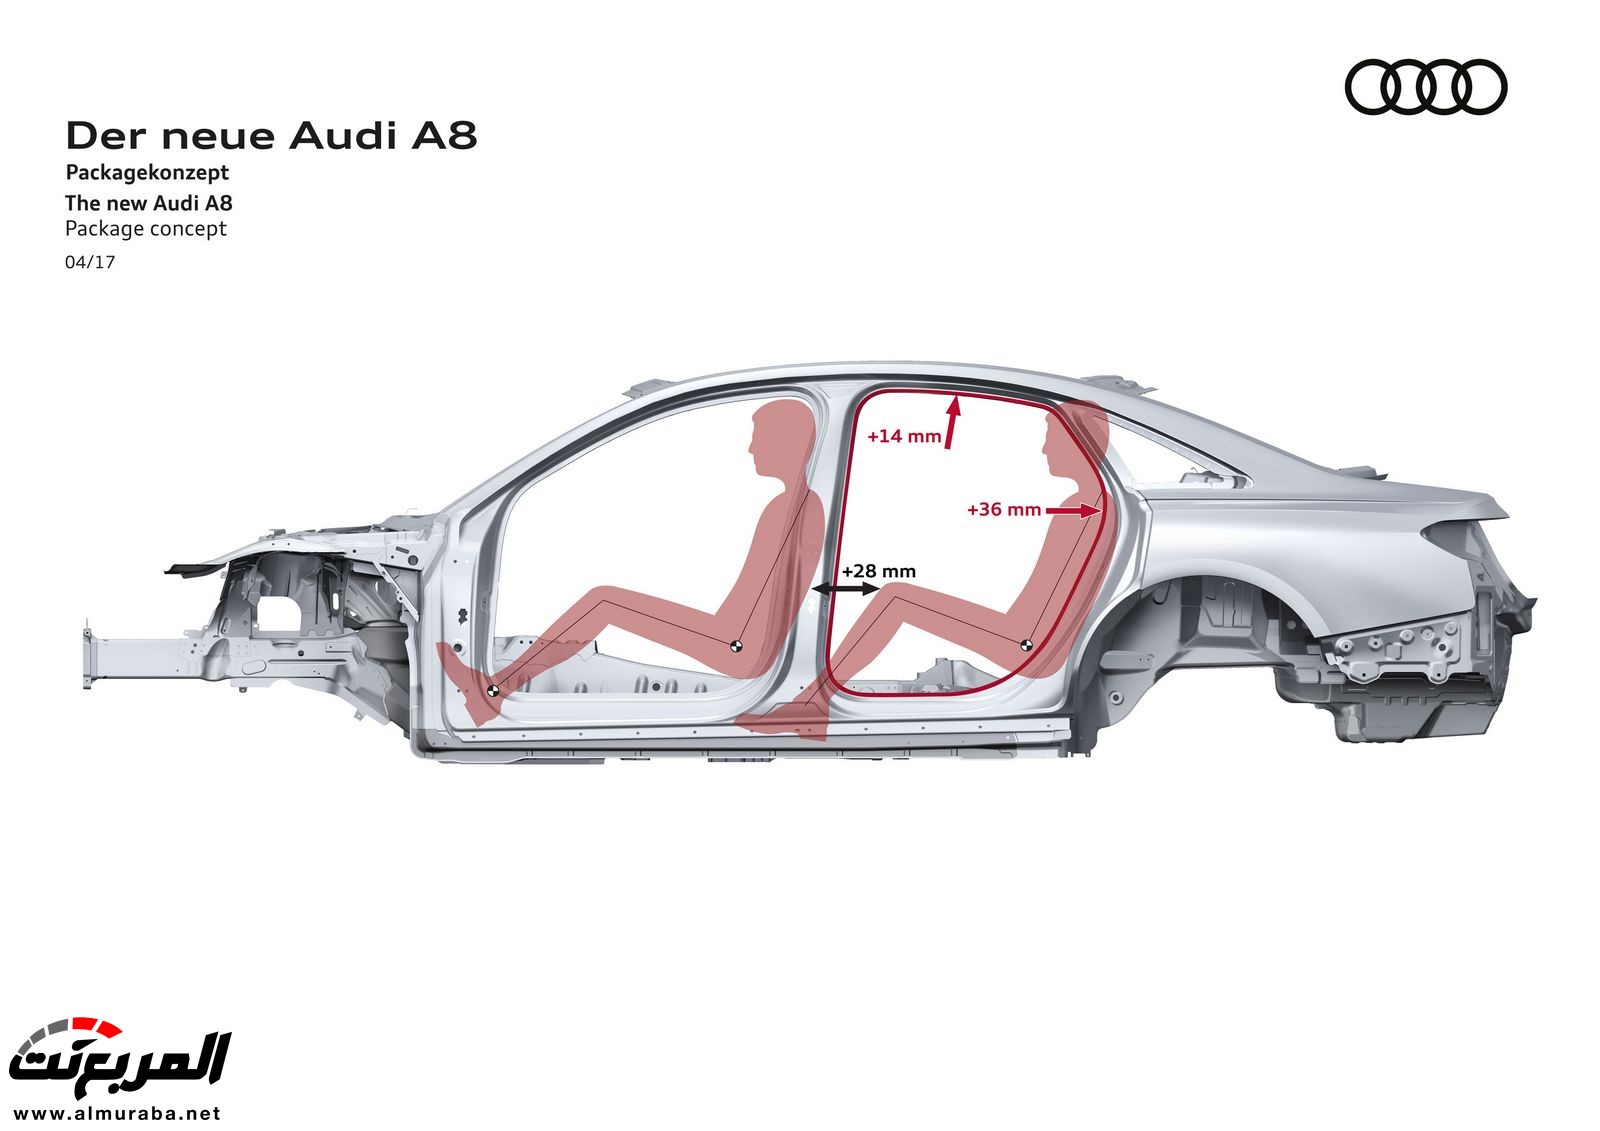 أودي A8 2018 الجديدة كلياً تكشف نفسها بتصميم وتقنيات متطورة "معلومات + 100 صورة" Audi A8 48